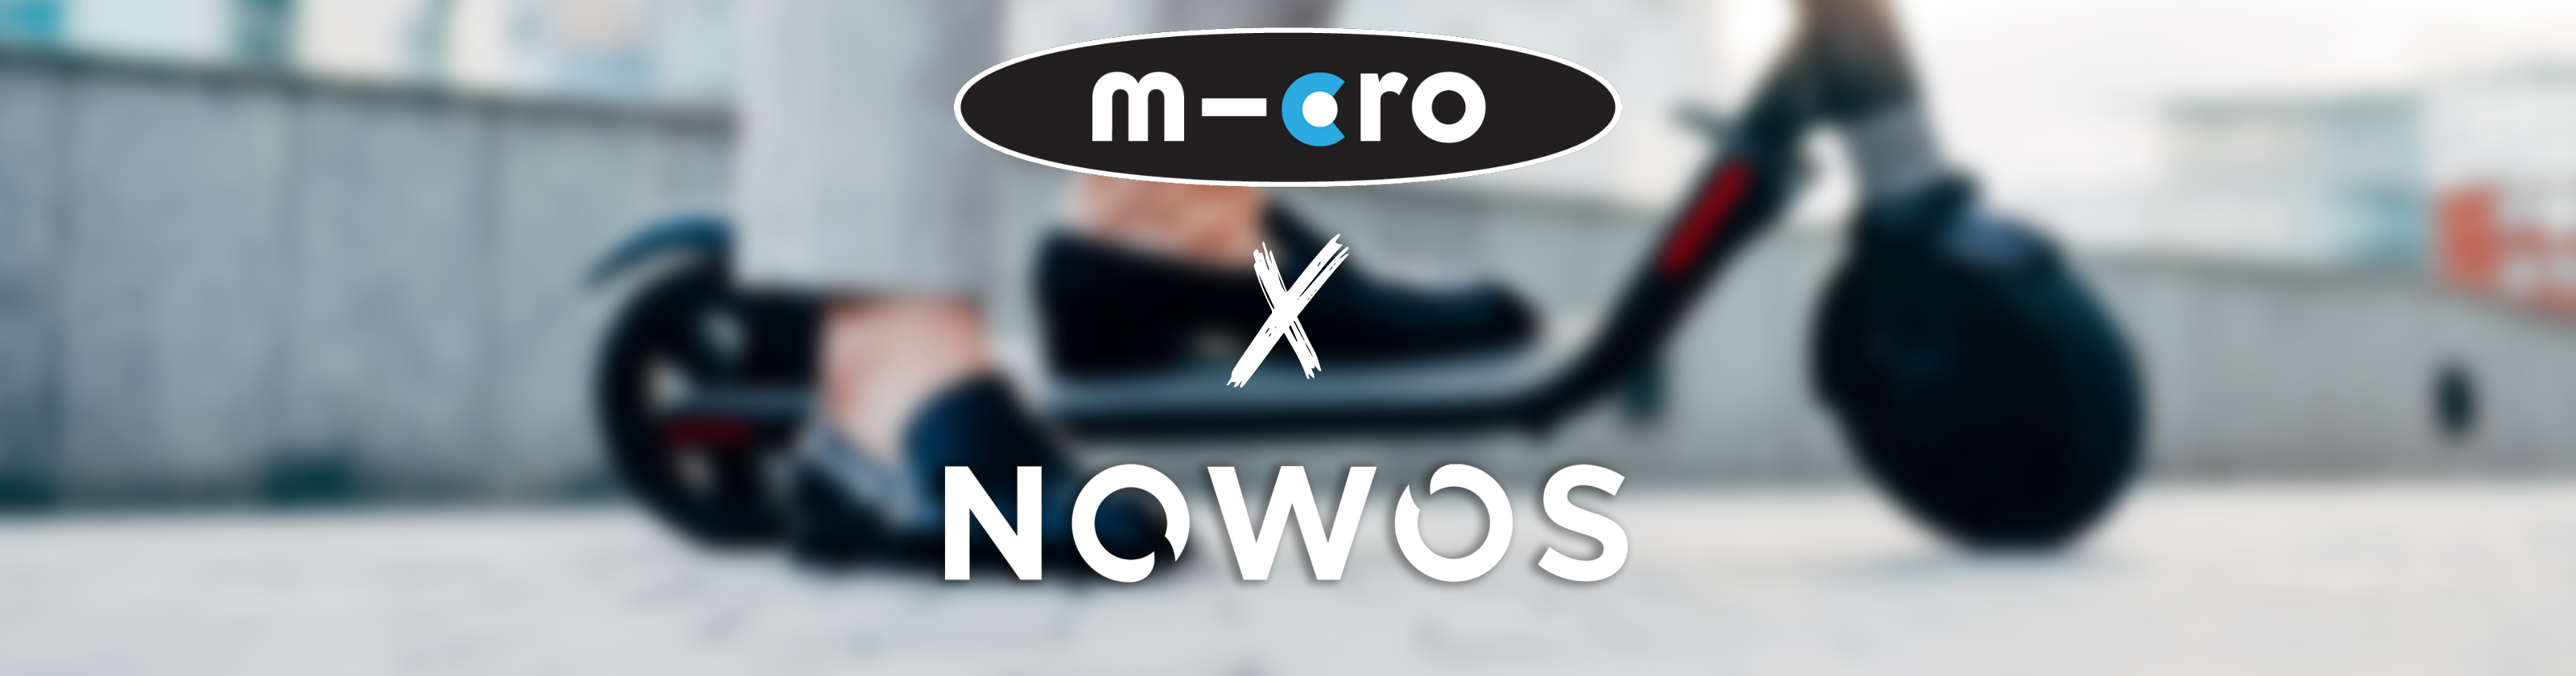 Micro X Nowos : Reconditionnement des batteries pour augmenter la durabilité